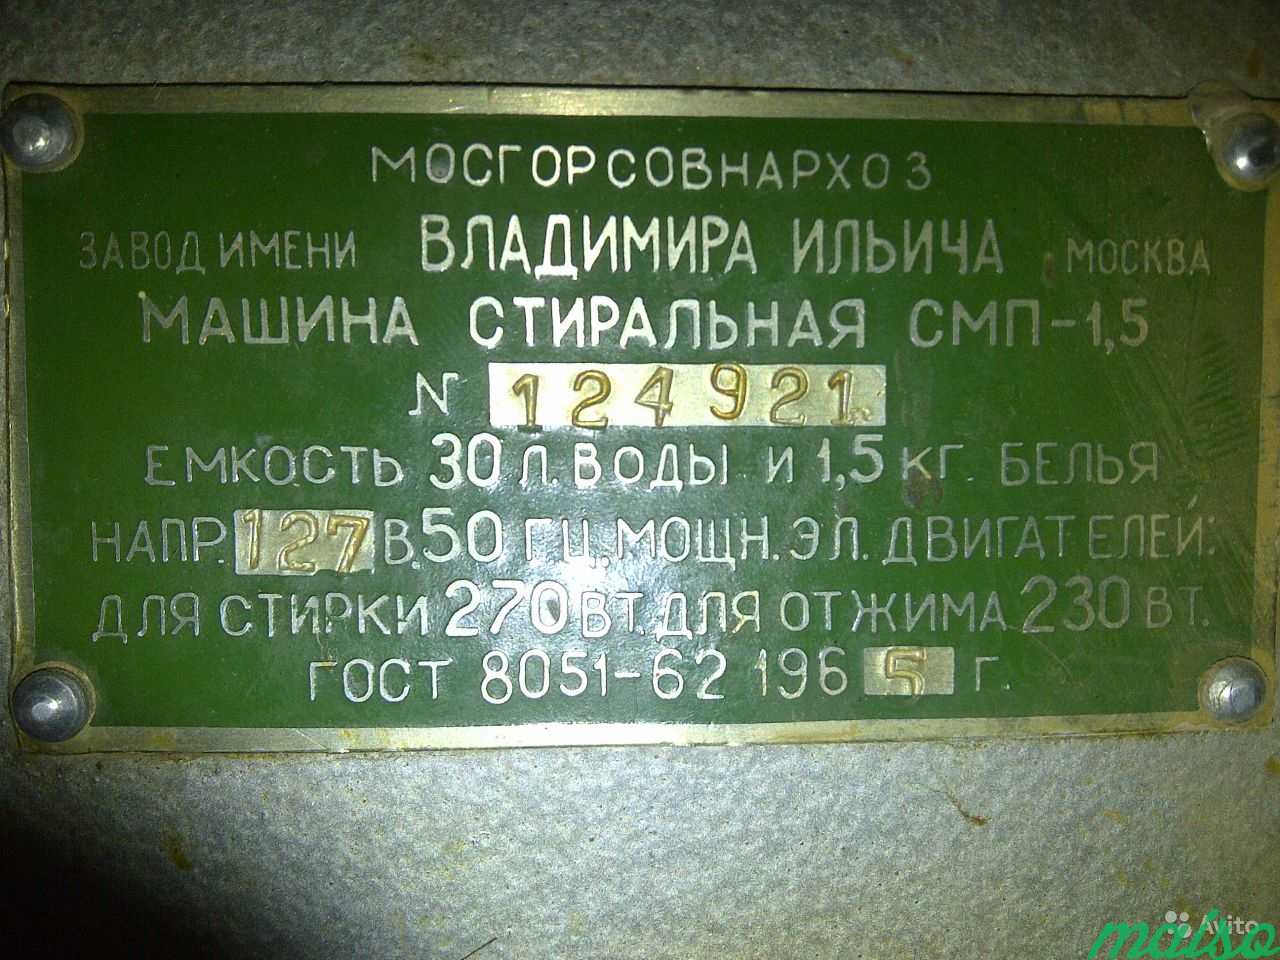 Ретро советская стиральная машинка смп-1.5 зви в Москве. Фото 2